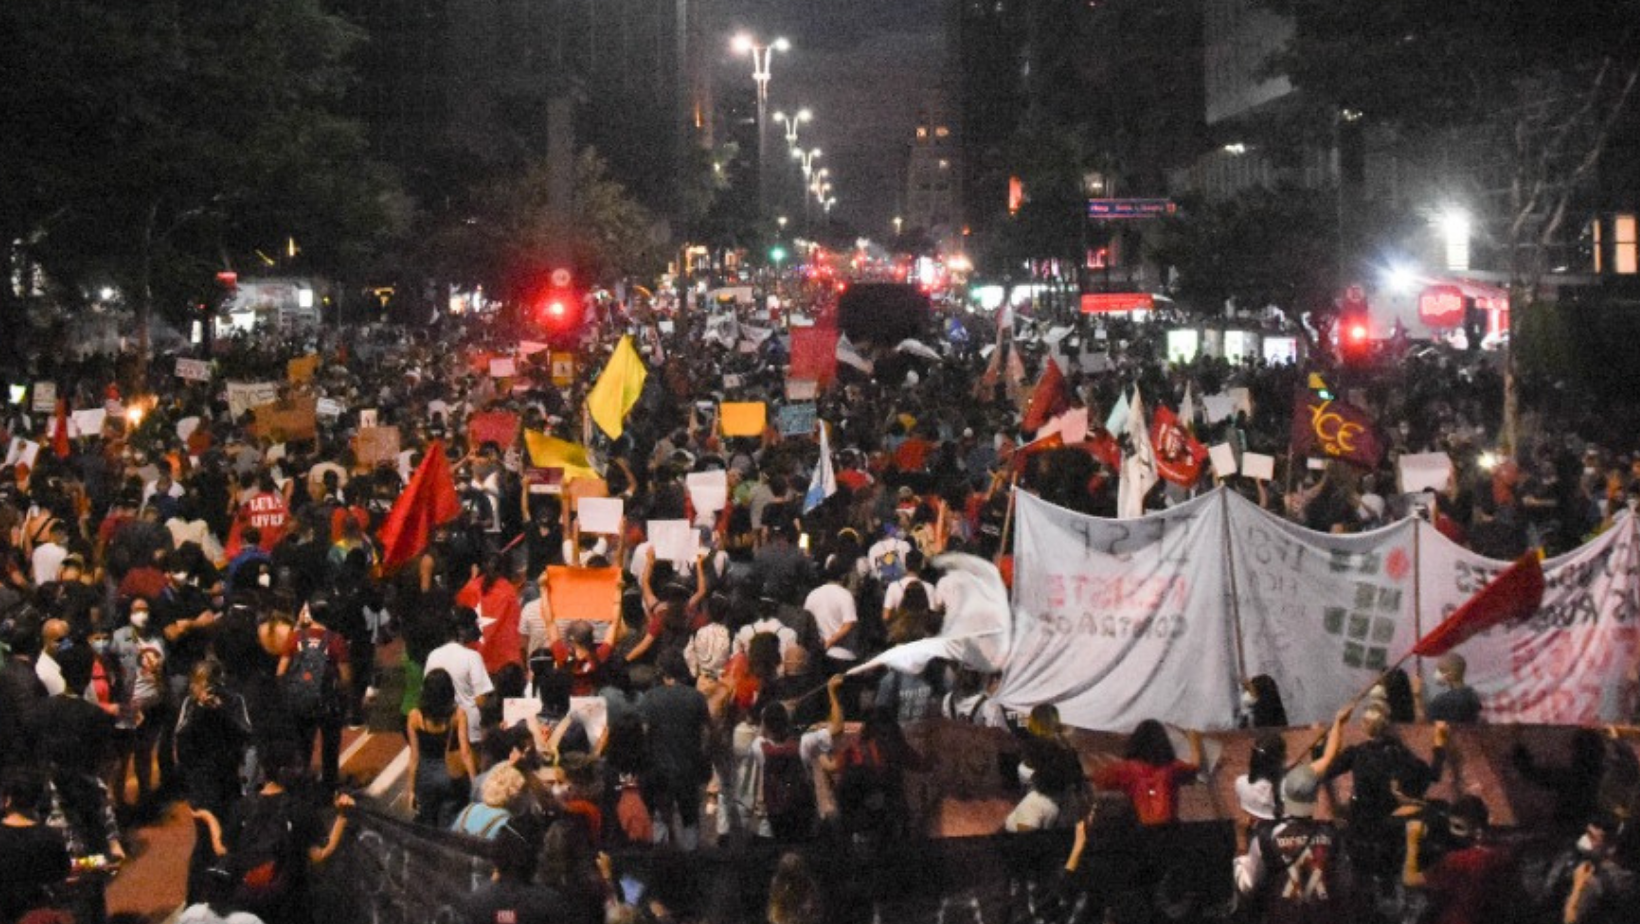 La foto muestra la Av. Paulista, de noche, tomada por los manifestantes, desde atrás, caminando.